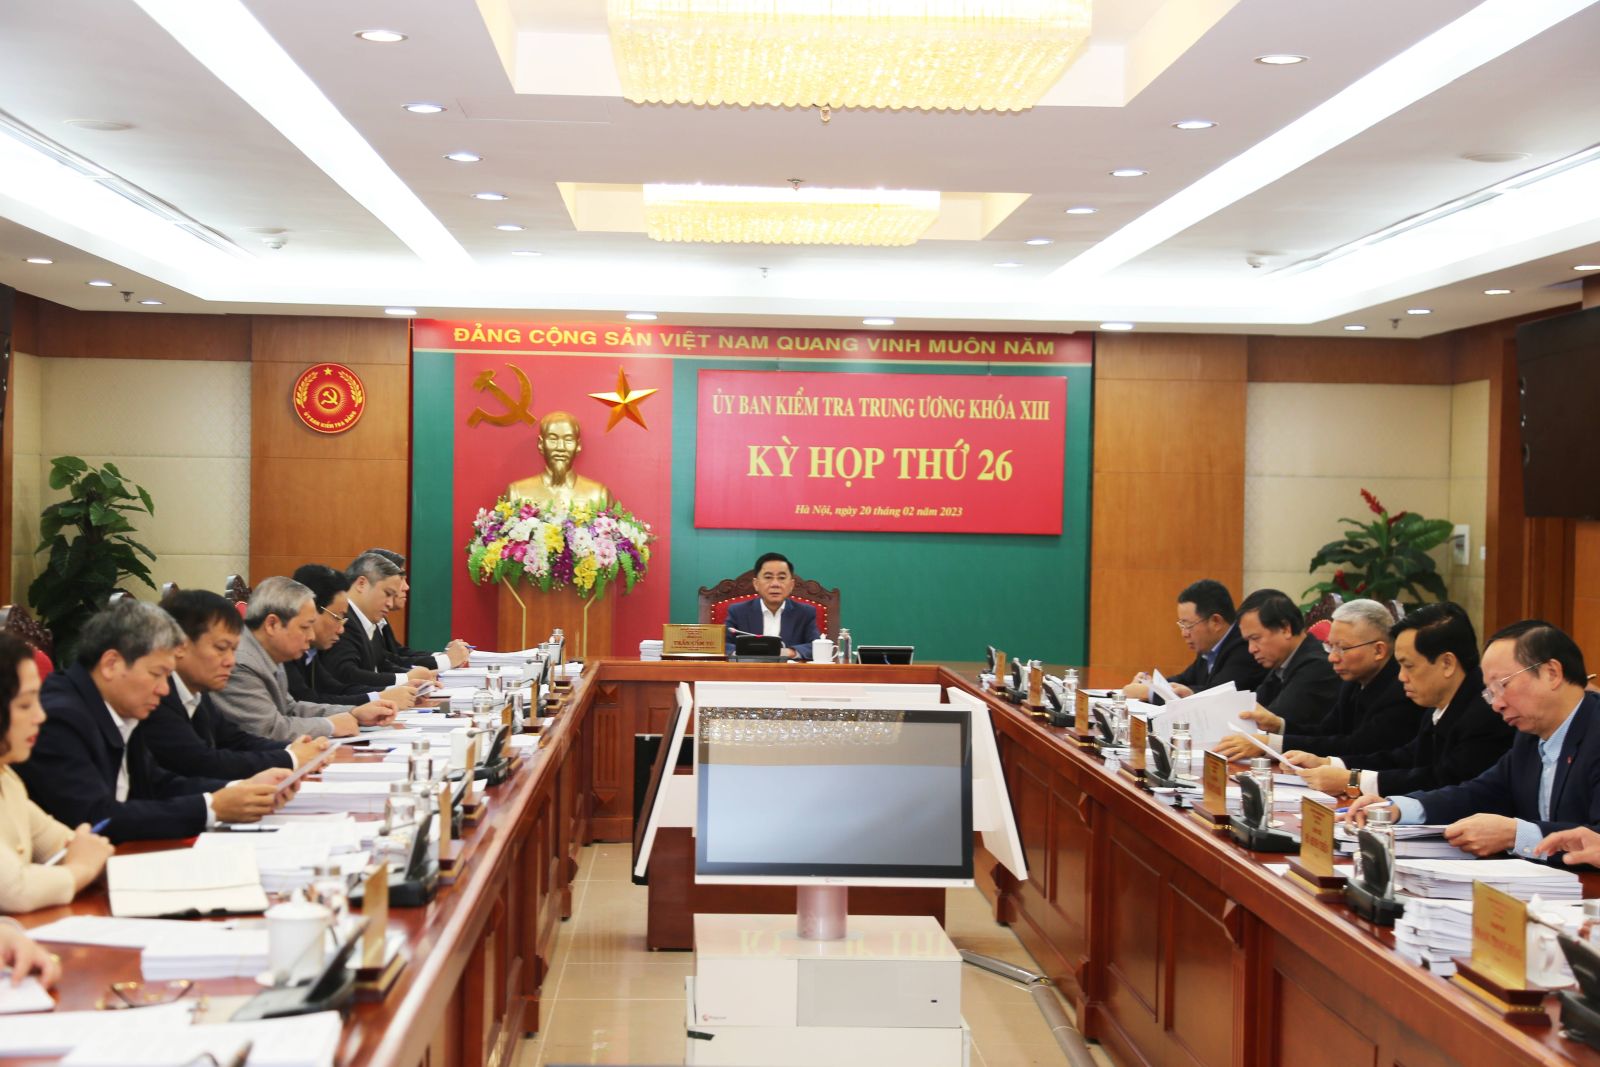 Nguyên Chủ tịch thị xã Từ Sơn và nguyên Giám đốc Sở Tài chính tỉnh Bắc Ninh đã suy thoái, bị đề nghị kỷ luật - Ảnh 1.